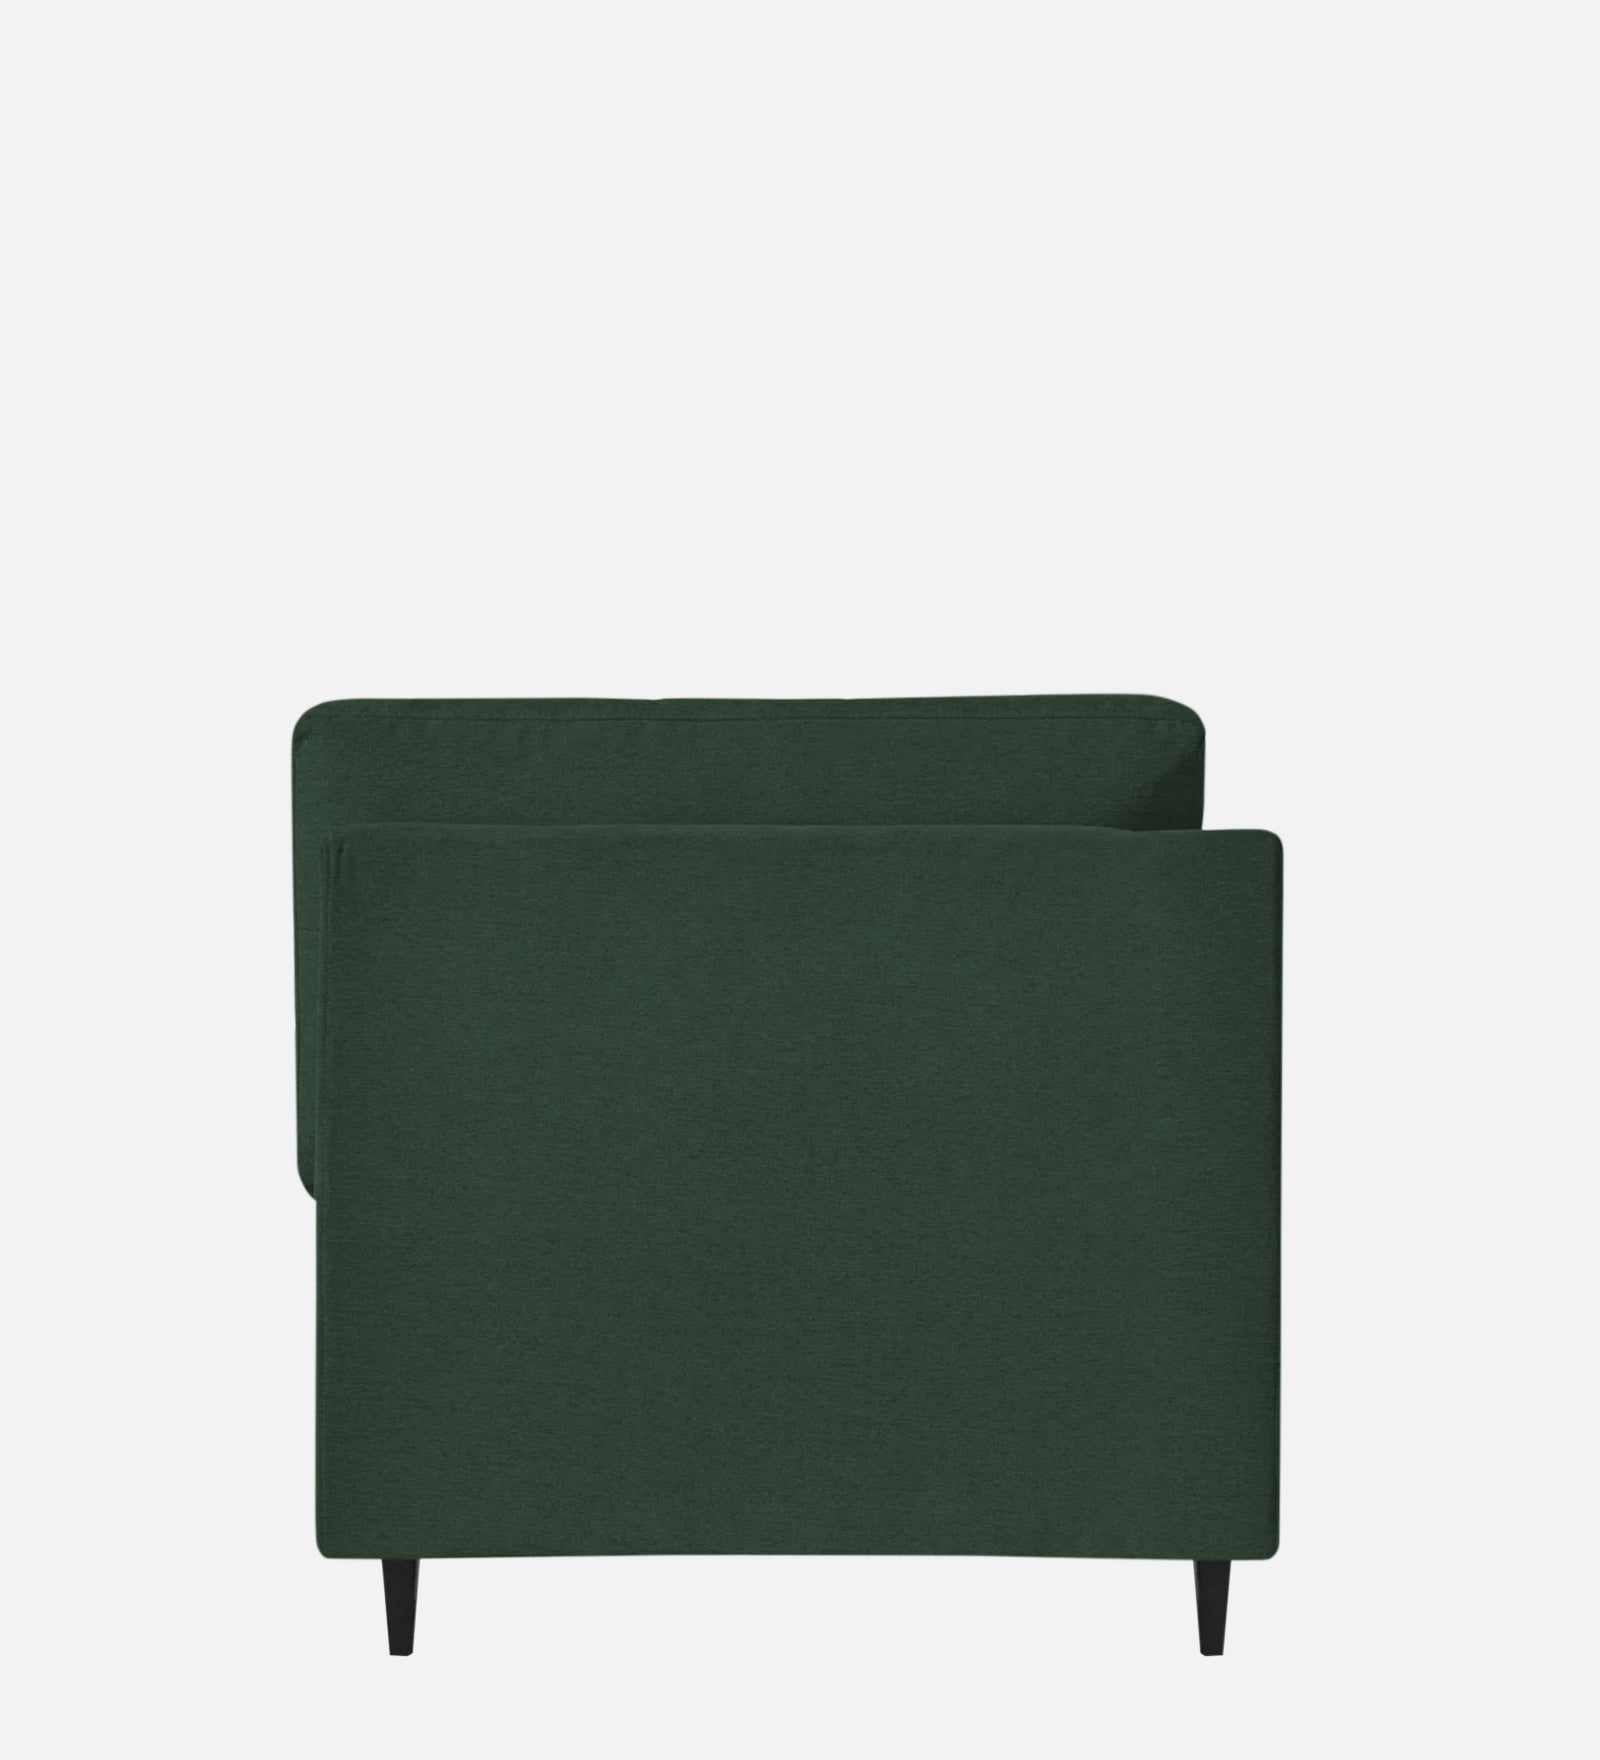 Jonze Velvet RHS Chaise Lounger in Amazon Green Colour